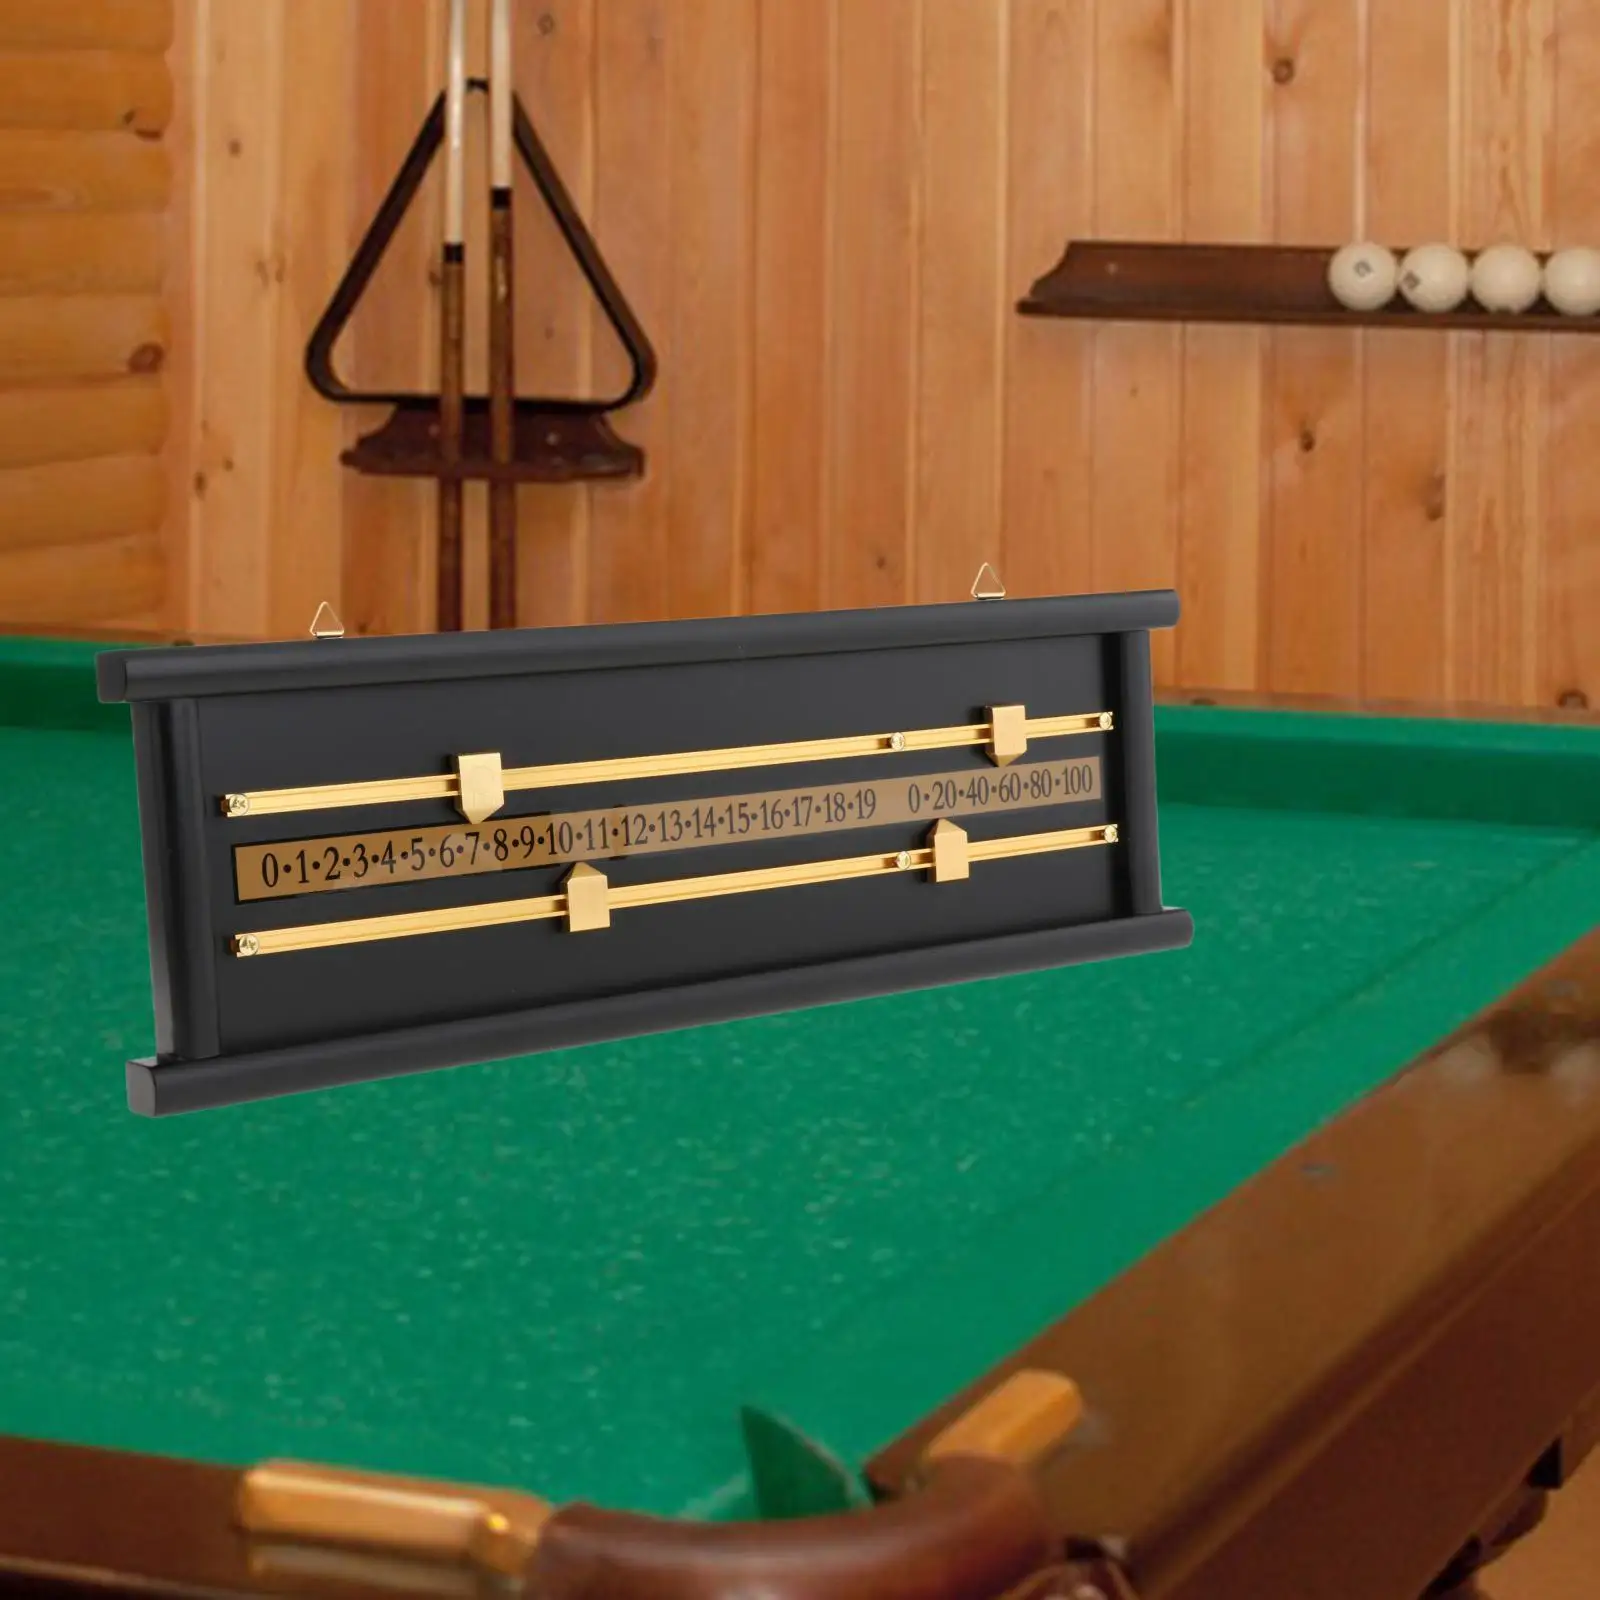 Shuffleboard Wall Mounted Scoreboard Snooker Score Keeper Accessories Device